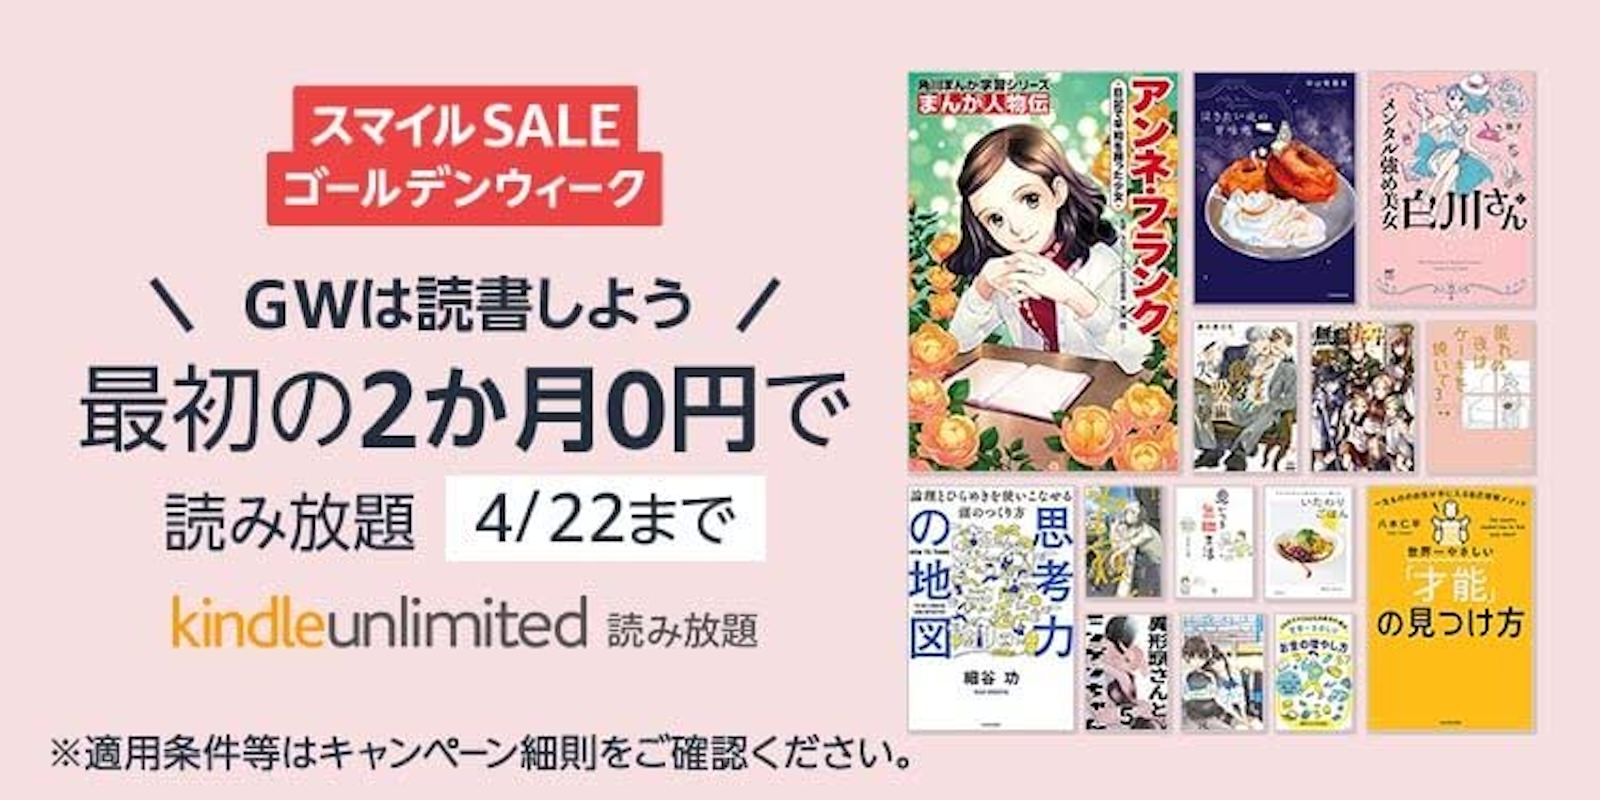 Kindle Unlimited GW sale